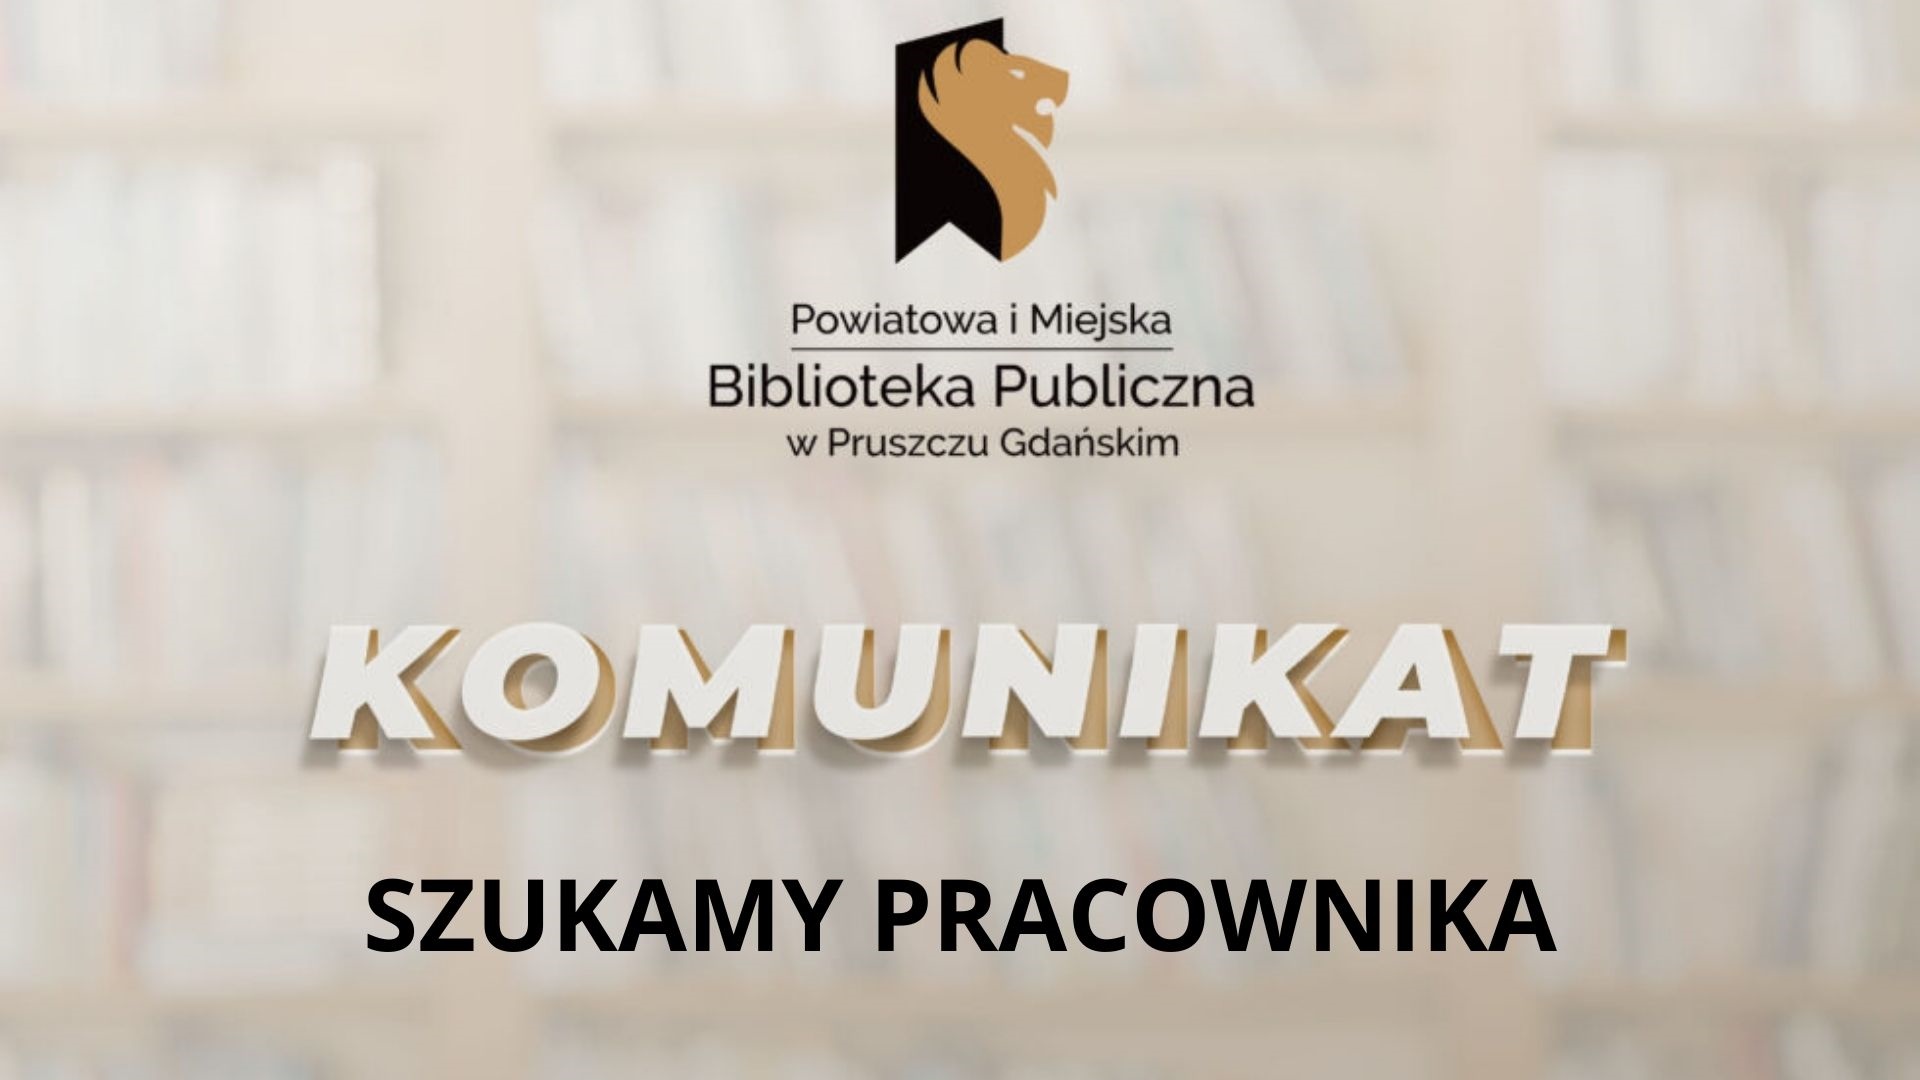 Logotyp biblioteki oraz napisy: Powiatowa i Miejska Biblioteka Publiczna w Pruszczu Gdańskim, komuniakt, szukamy pracownika.